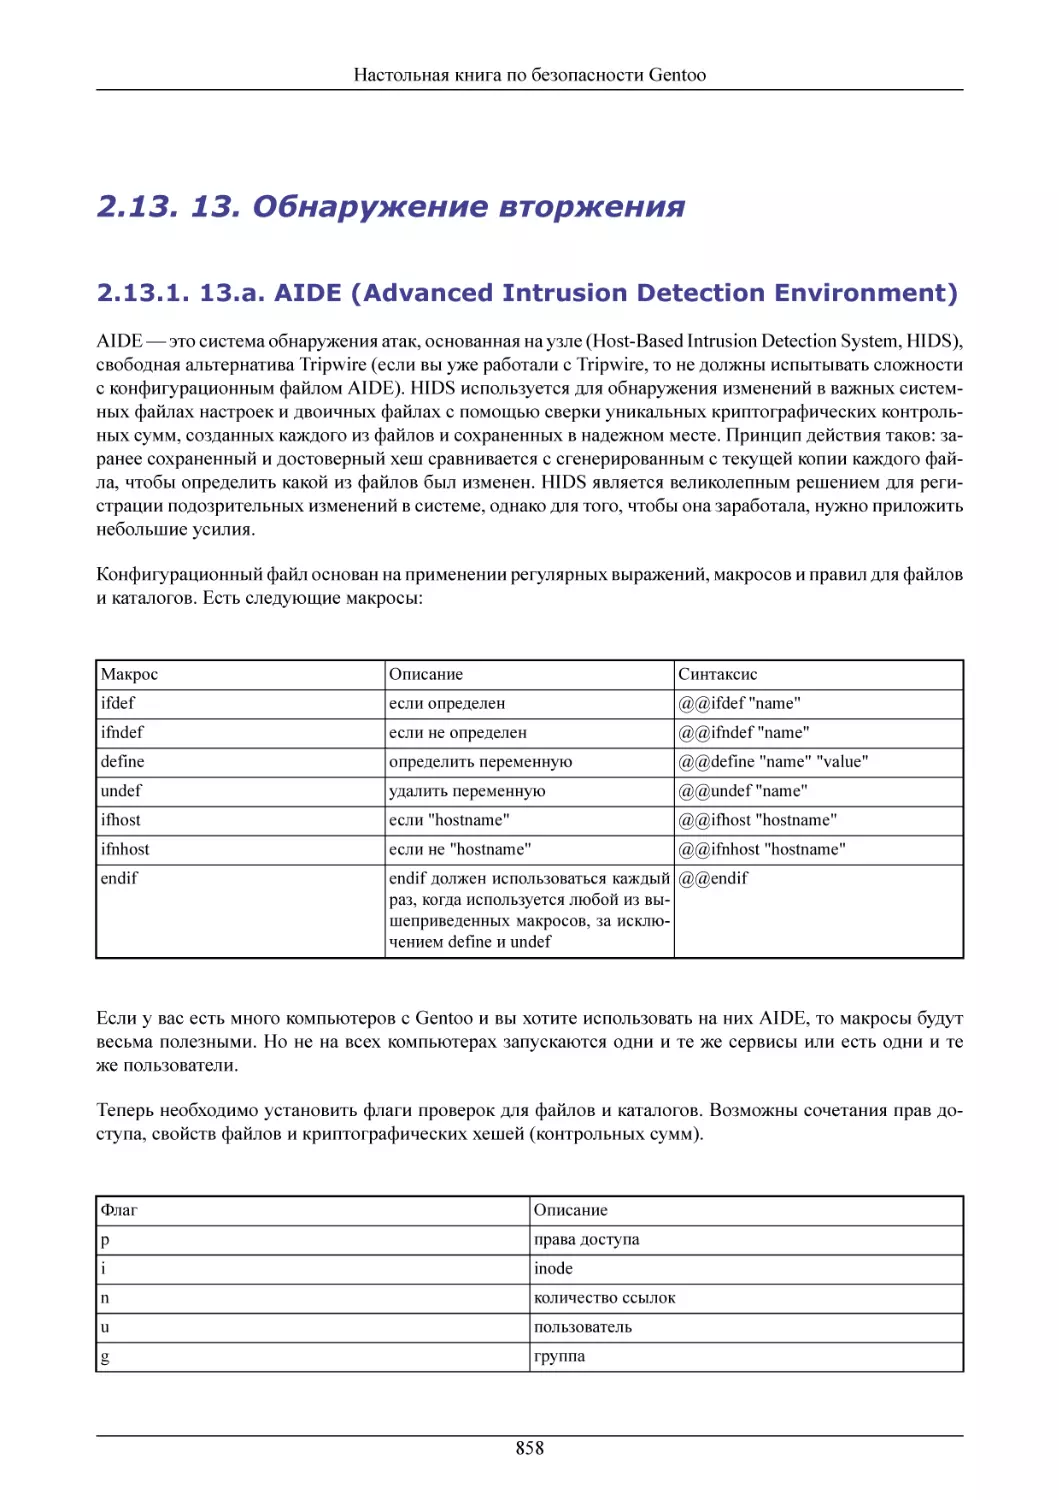 13. Обнаружение вторжения
13.a. AIDE (Advanced Intrusion Detection Environment)